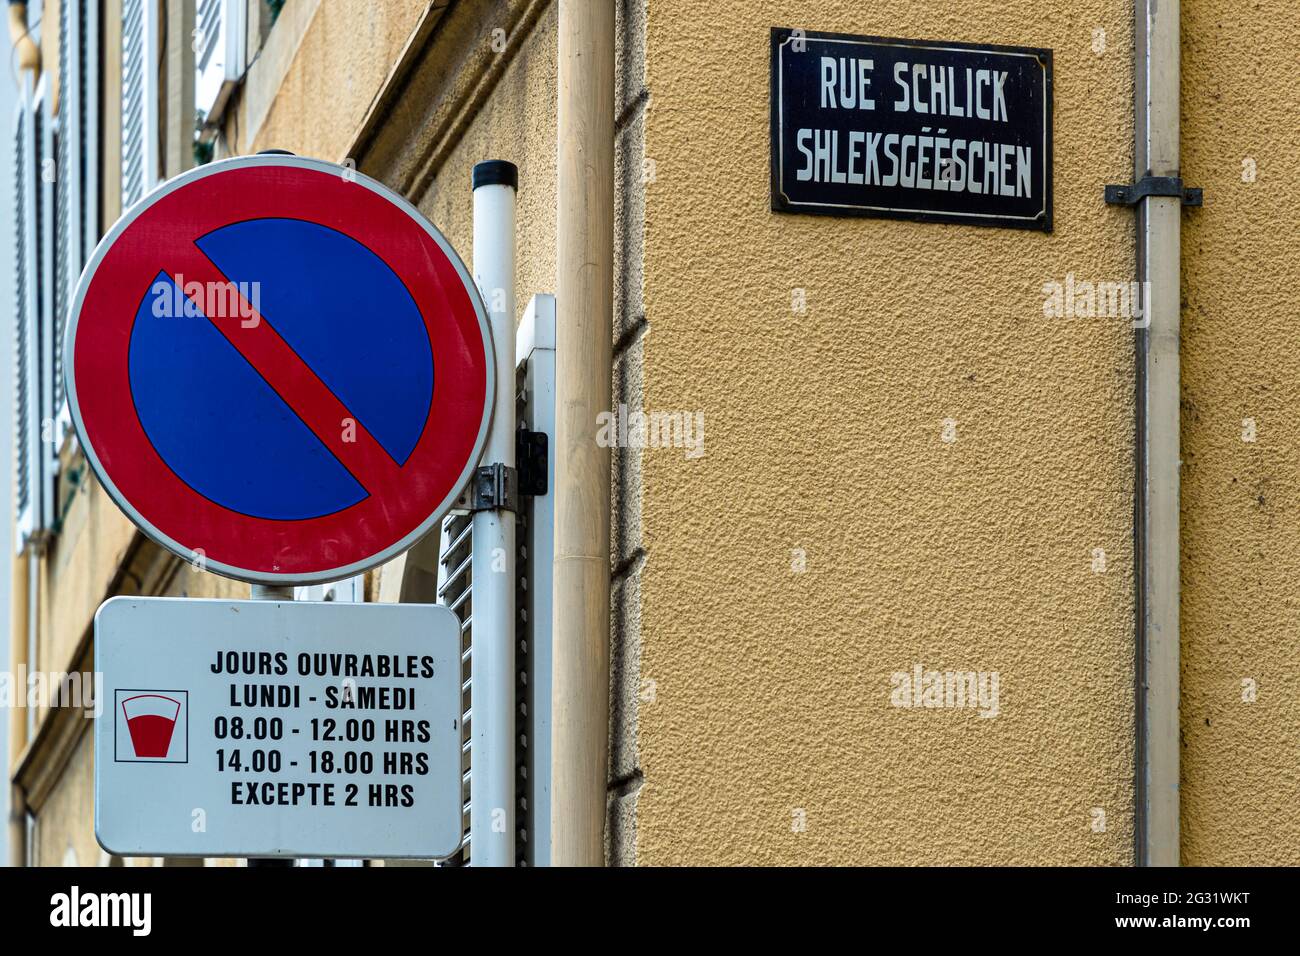 No parking sign at Schlicks Gässchen in Echternach, Luxembourg Stock Photo